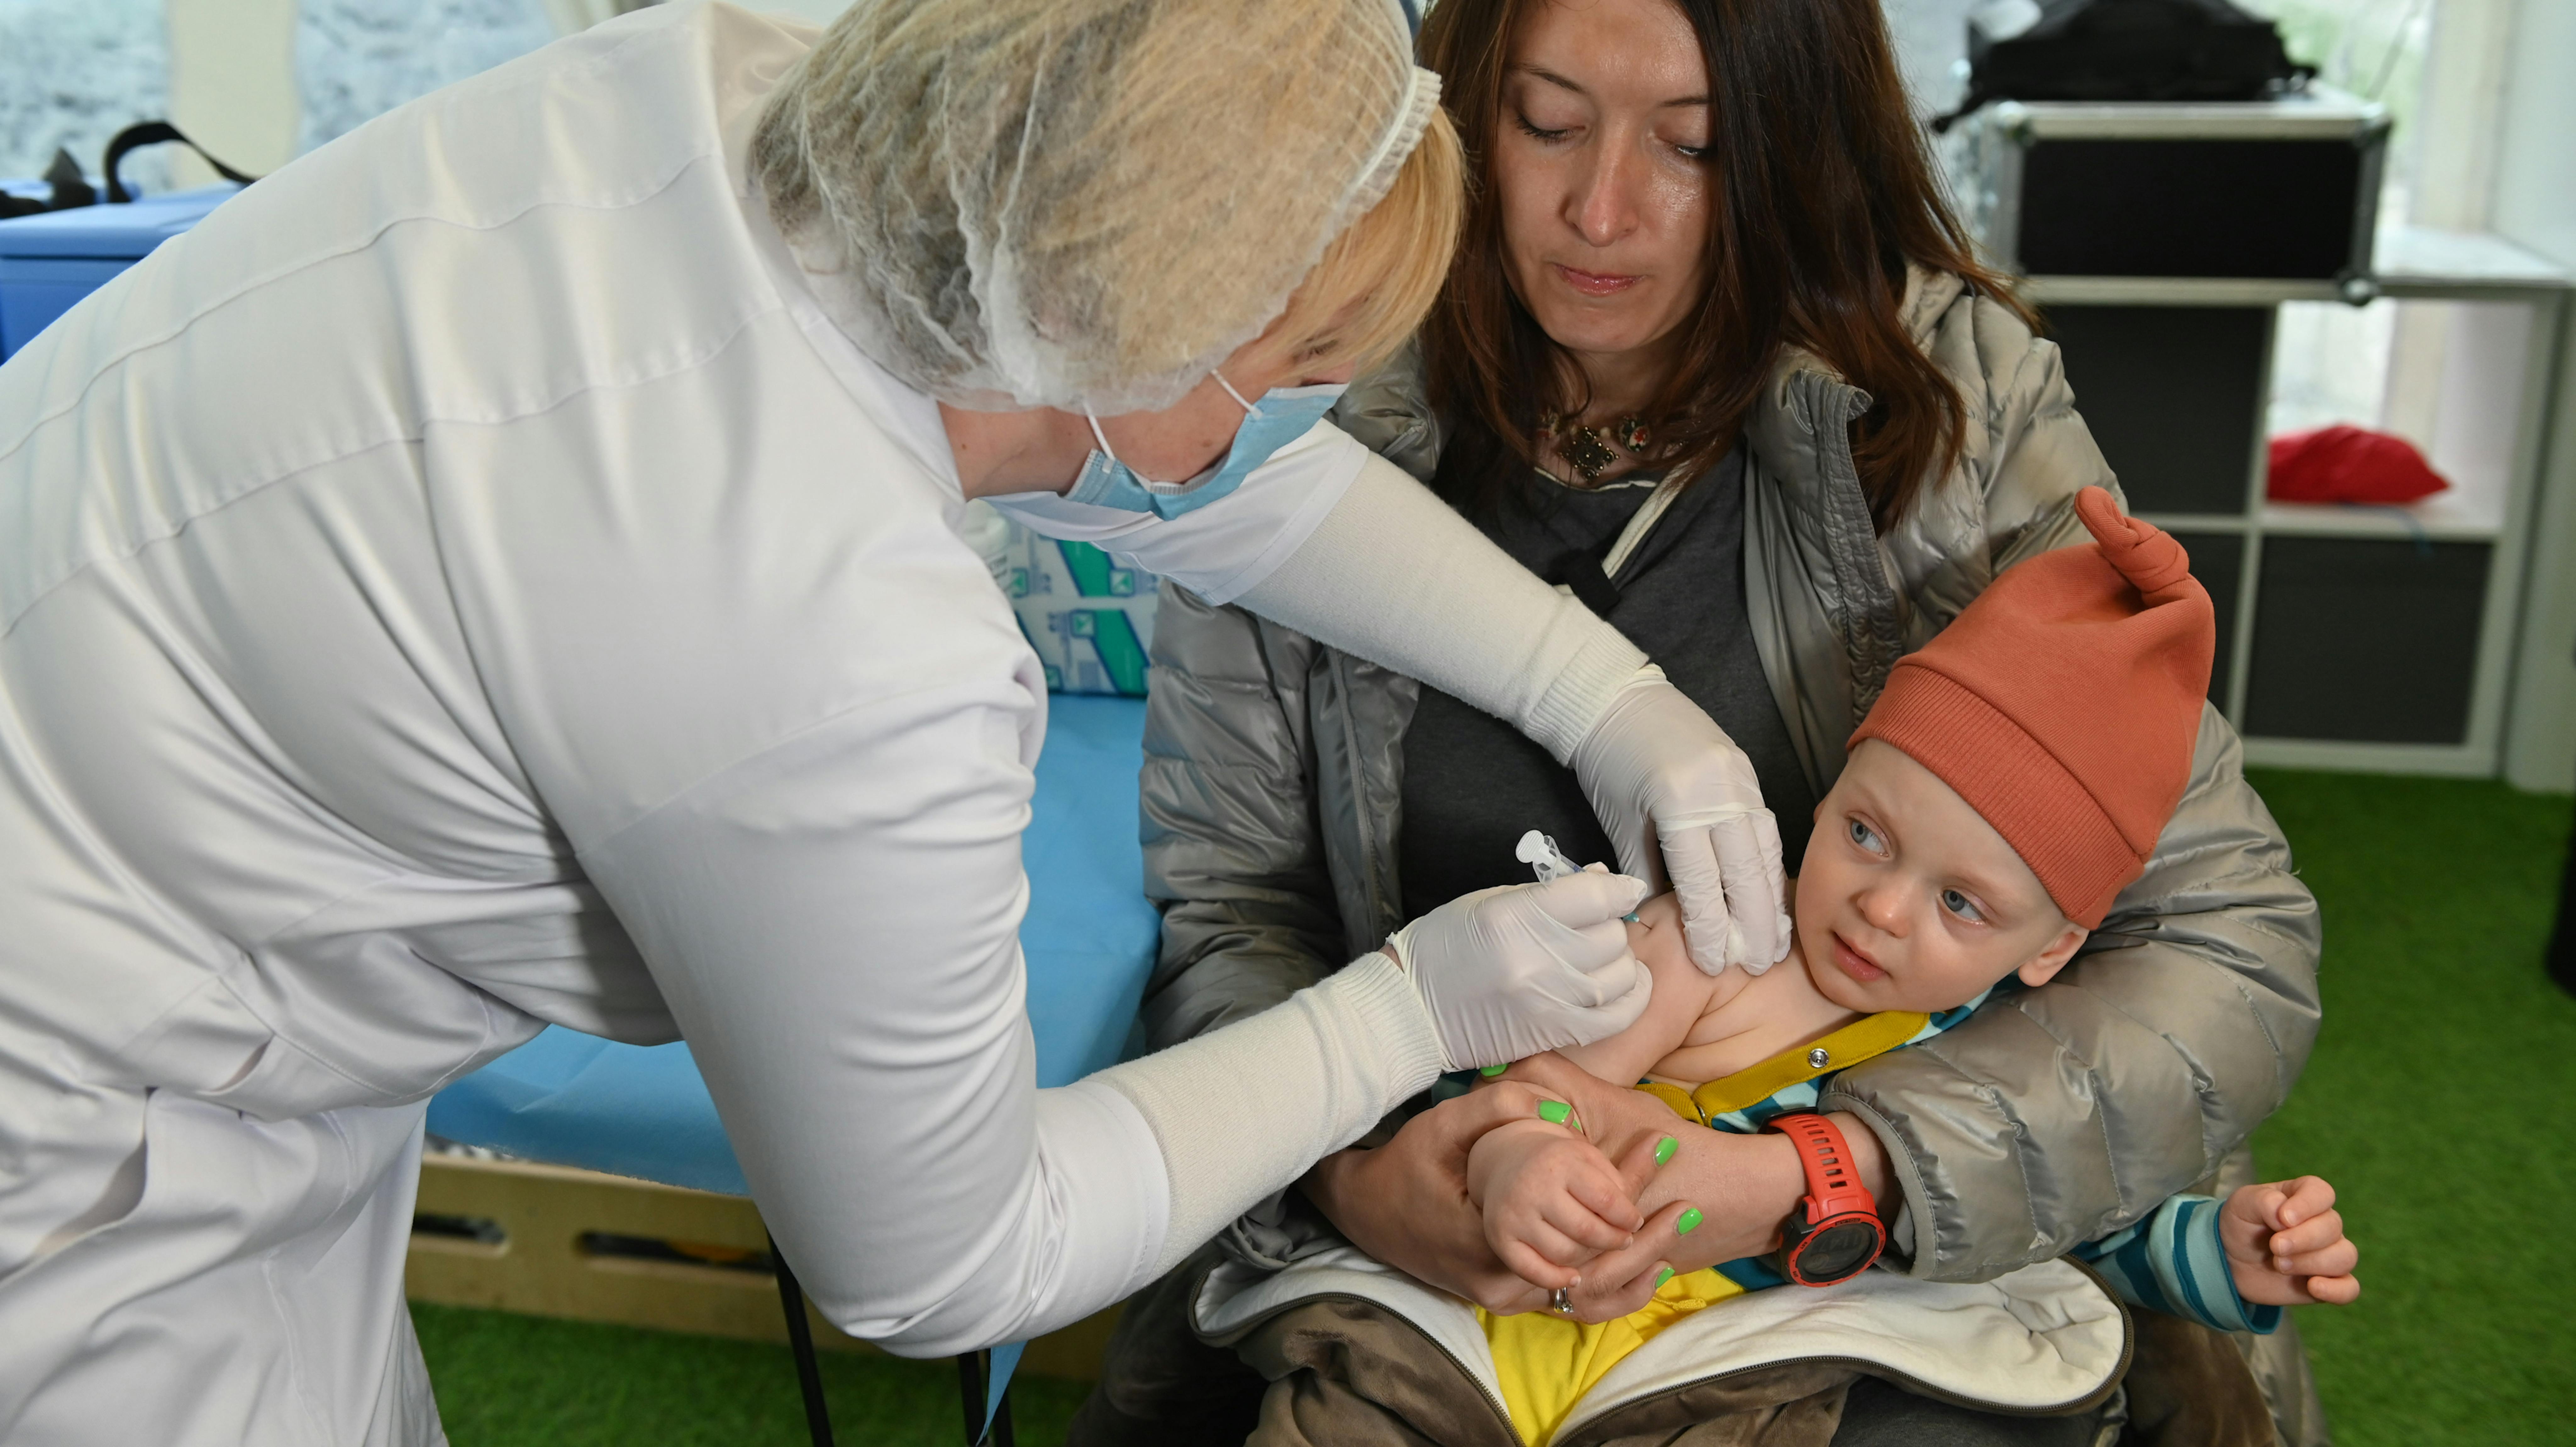 Ucraina - Un bambino viene vaccinato presso lo spilno child spot di Kiev